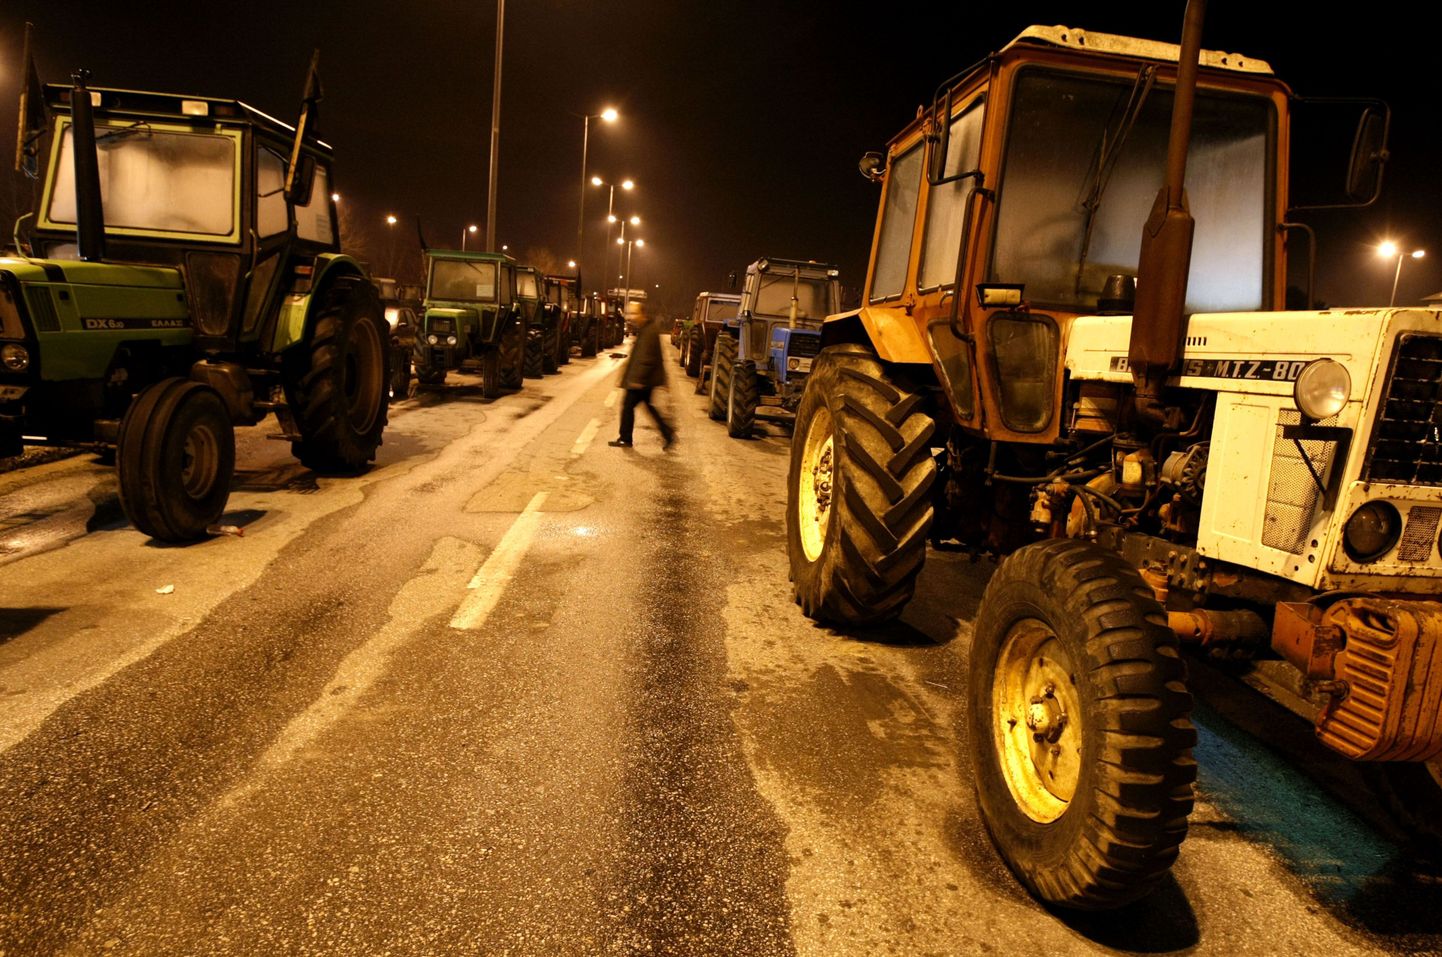 Kreeka farmerid blokeerivad traktoritega Promachonase piiriületuspunkti Bulgaariasse.